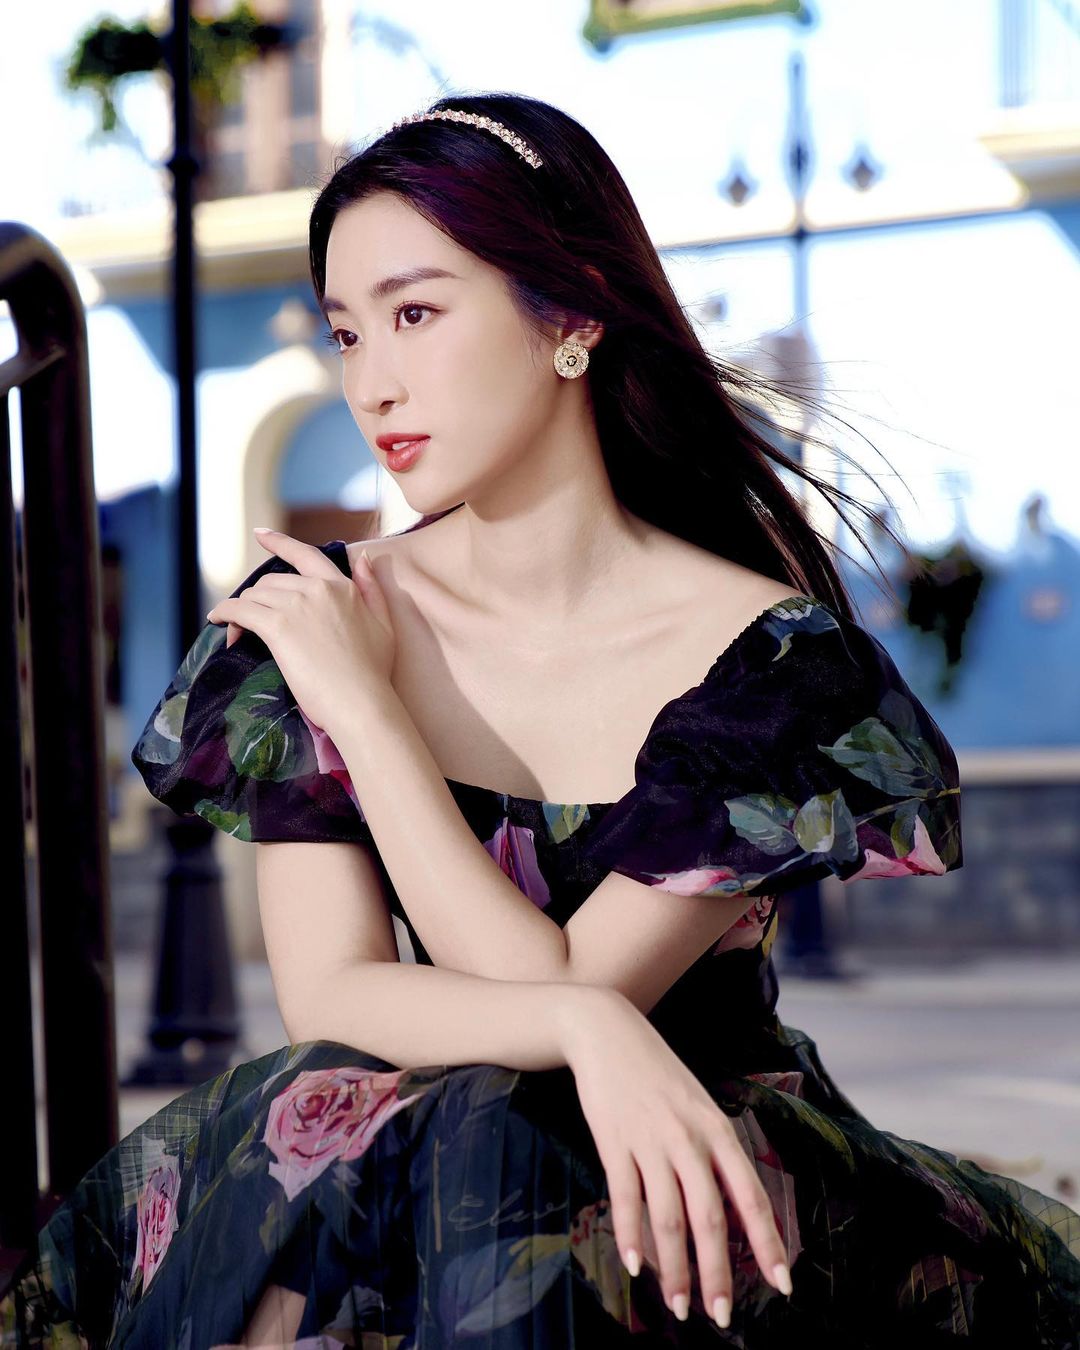 Đỗ Mỹ Linh tung ảnh mới, netizen bình luận: Có duyên nhất trong các Hoa hậu - Ảnh 7